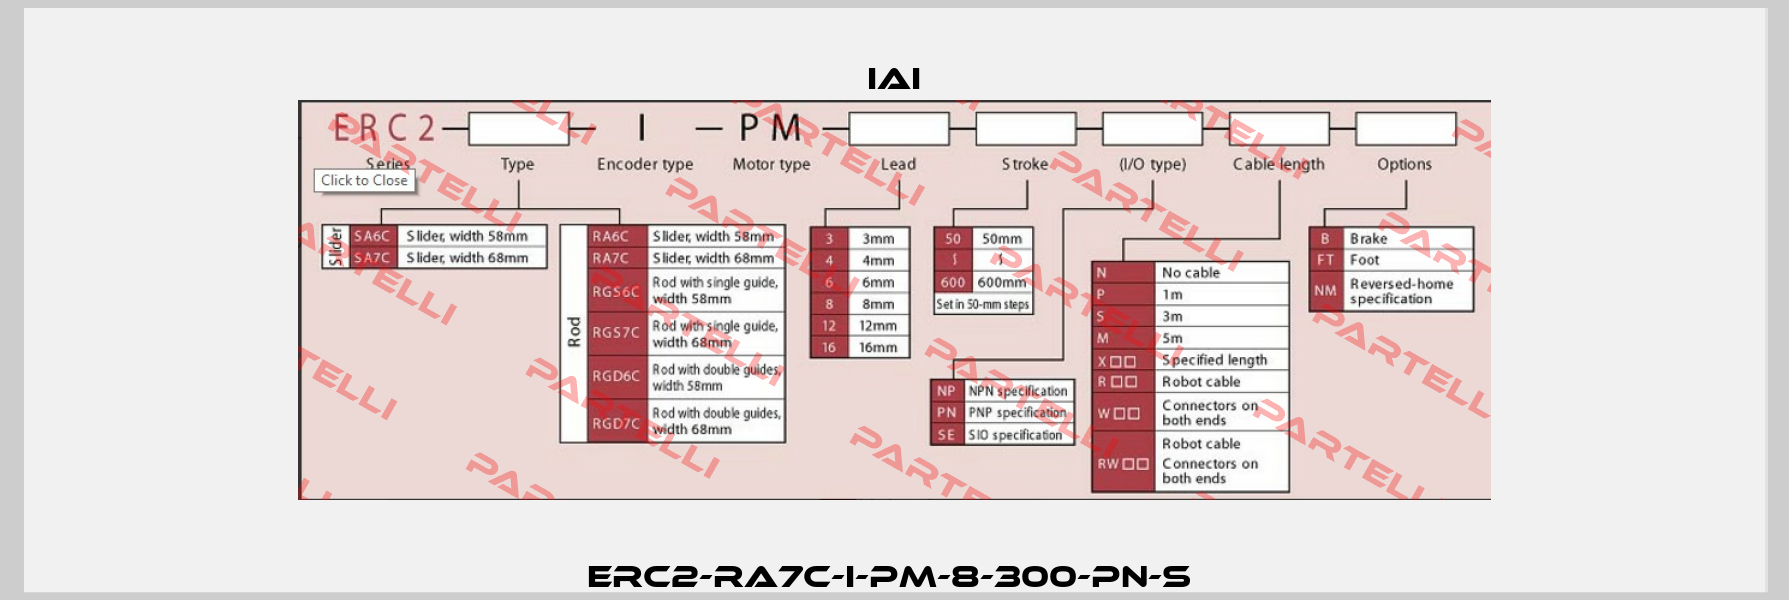 ERC2-RA7C-I-PM-8-300-PN-S  IAI